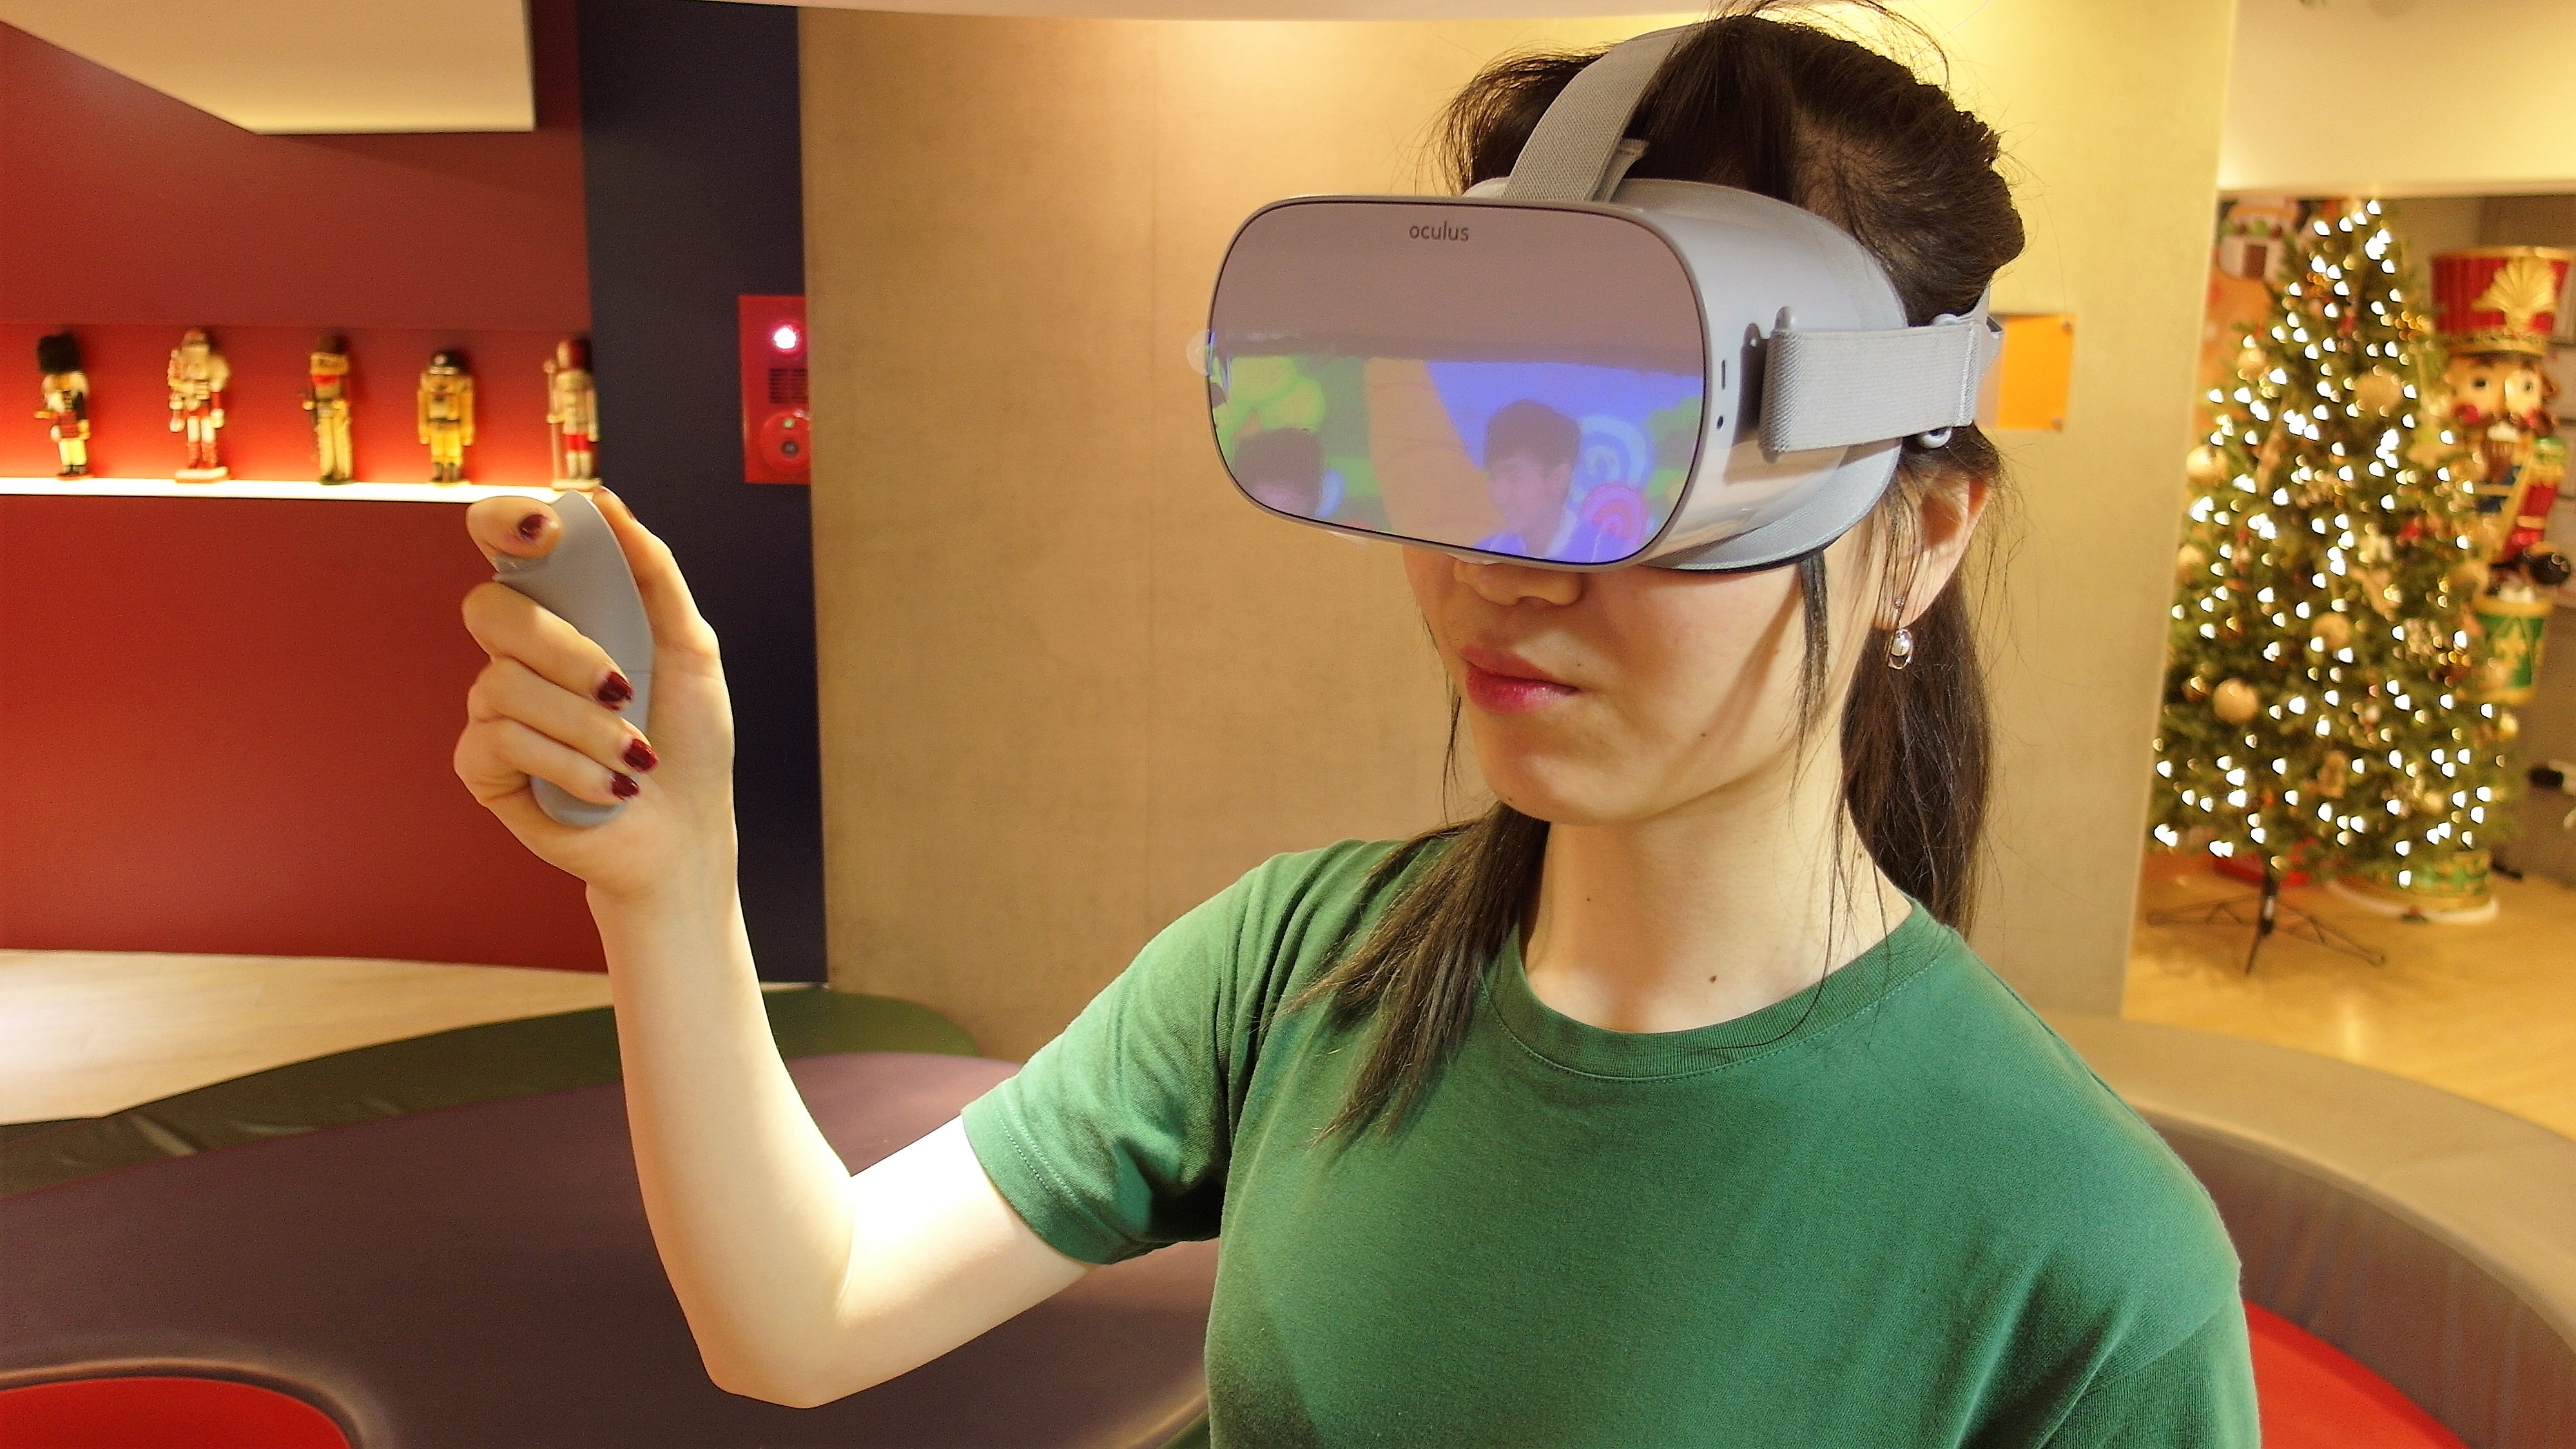 獨立式 VR「Oculus Go」開箱體驗 - 科技狗 3C DOG